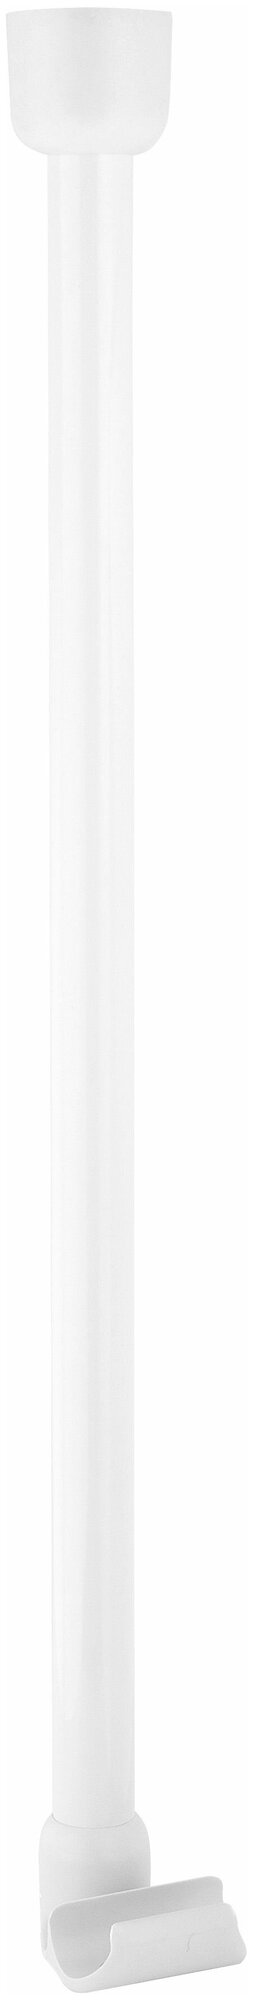 Штанга опорная вертикальная RIDDER 55 см белый